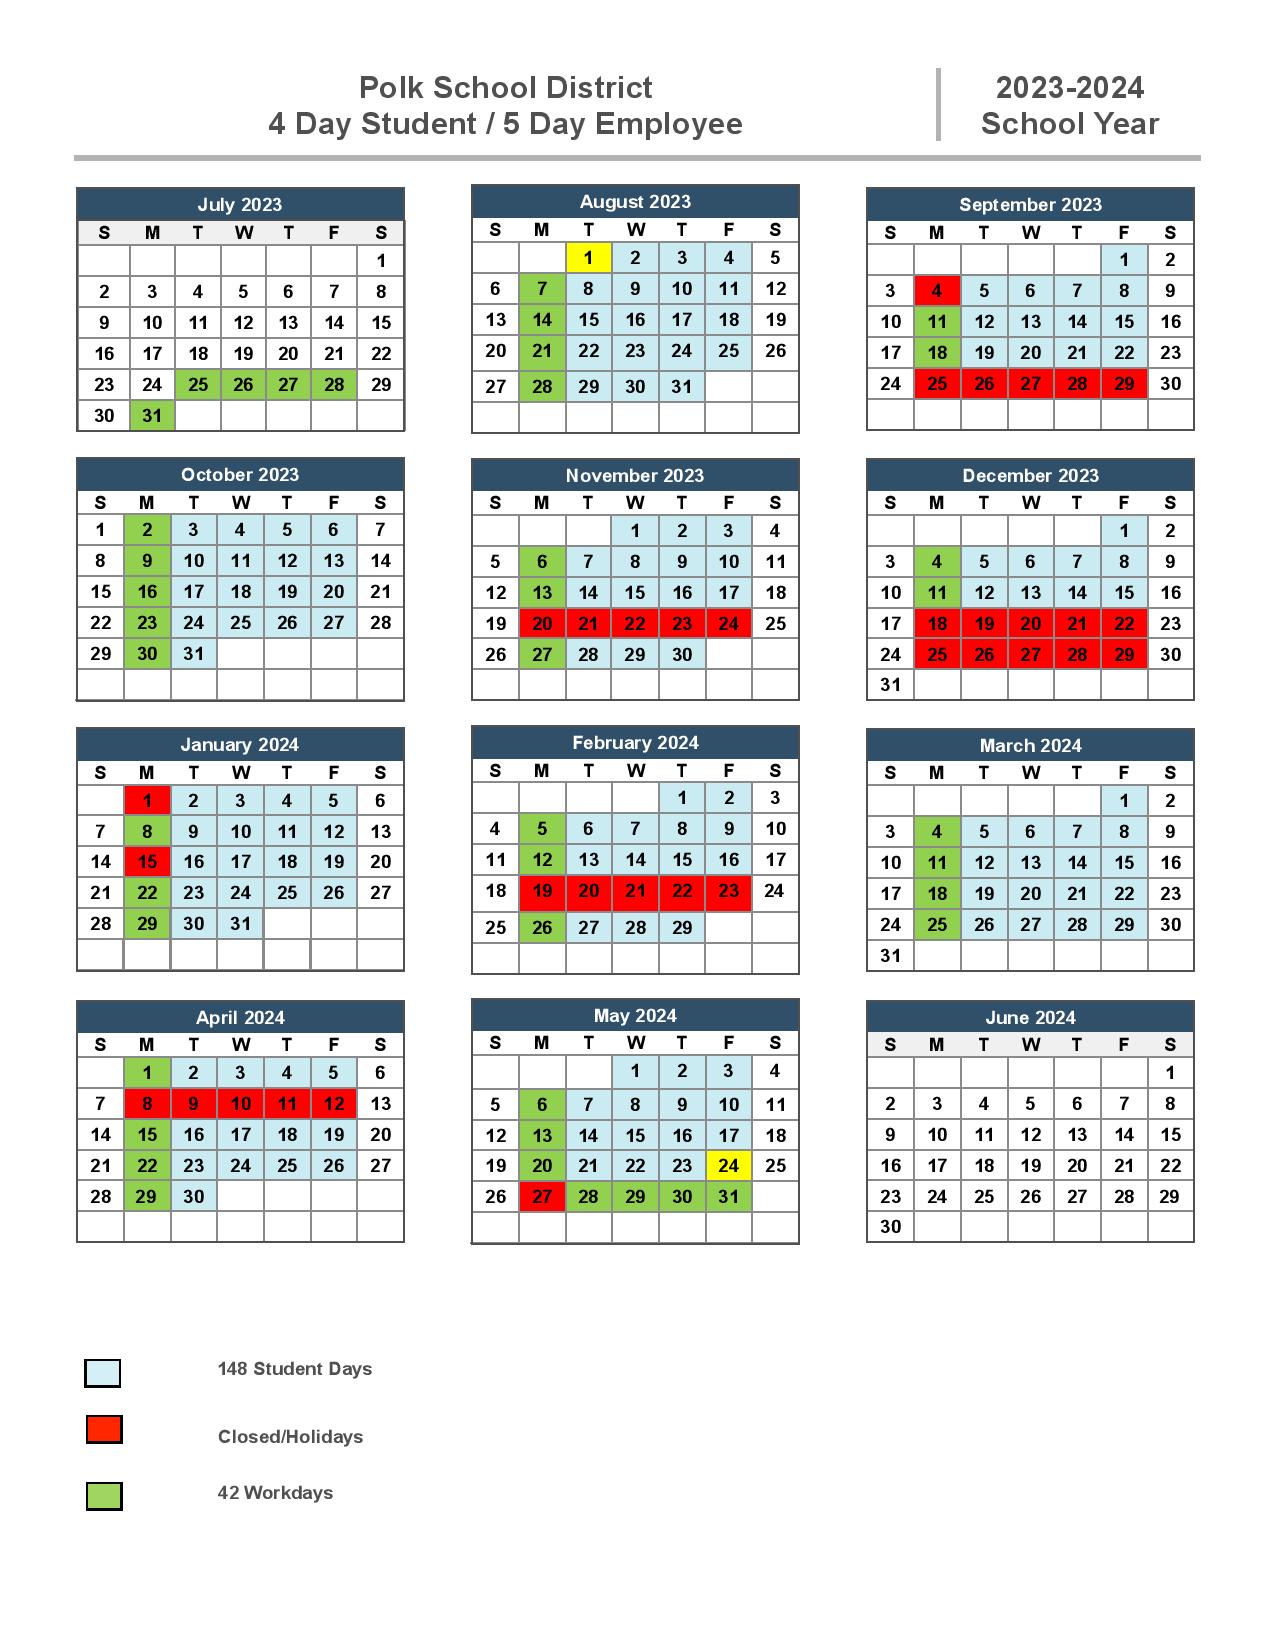 Polk County Schools Calendar 20232024 in PDF